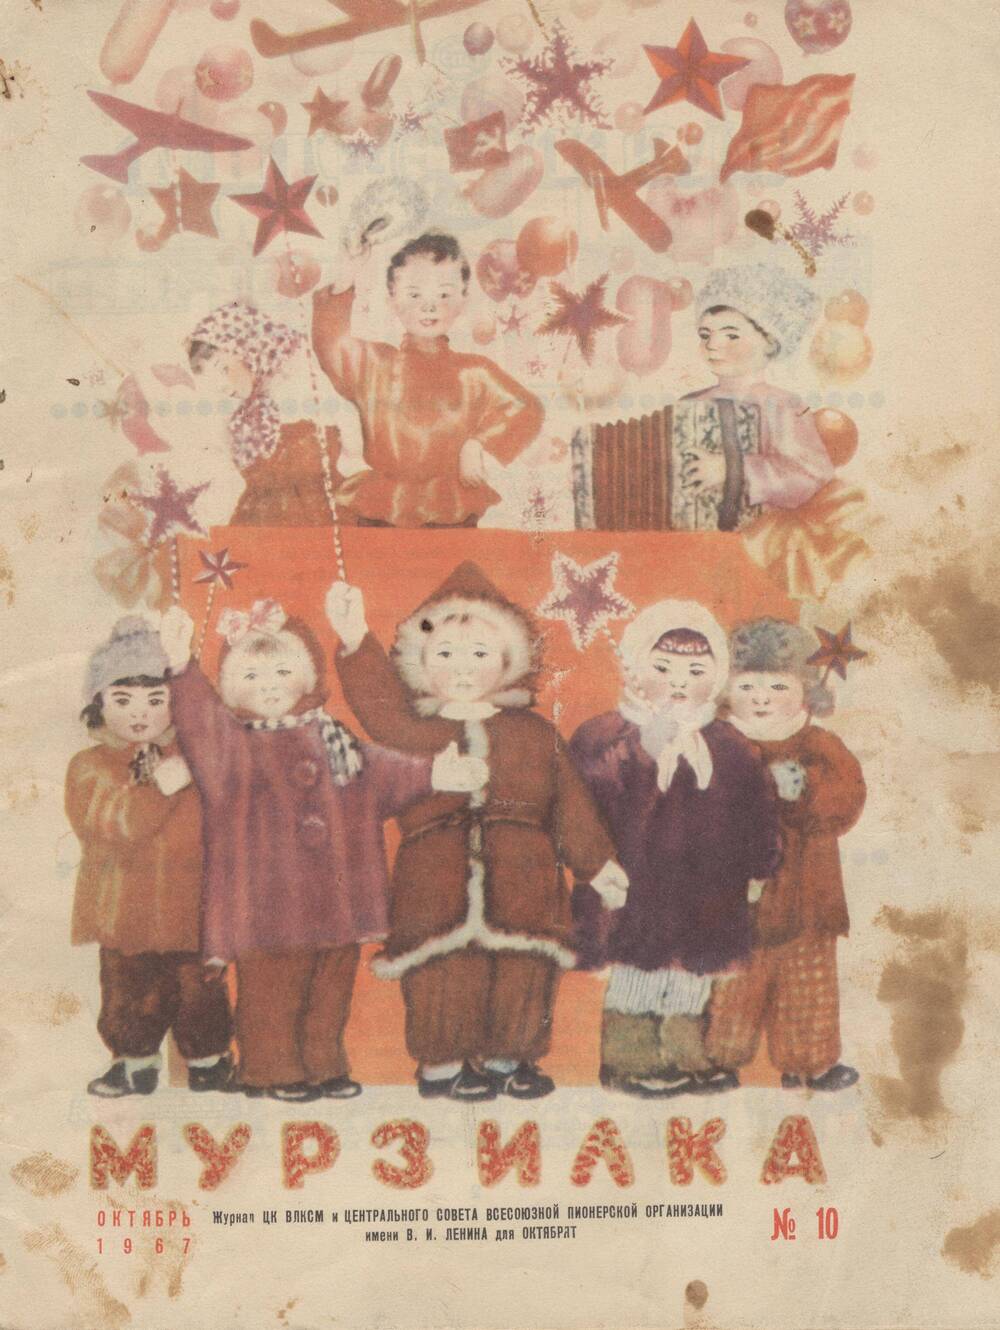 Журнал. Мурзилка. № 10, Октябрь 1967 г.